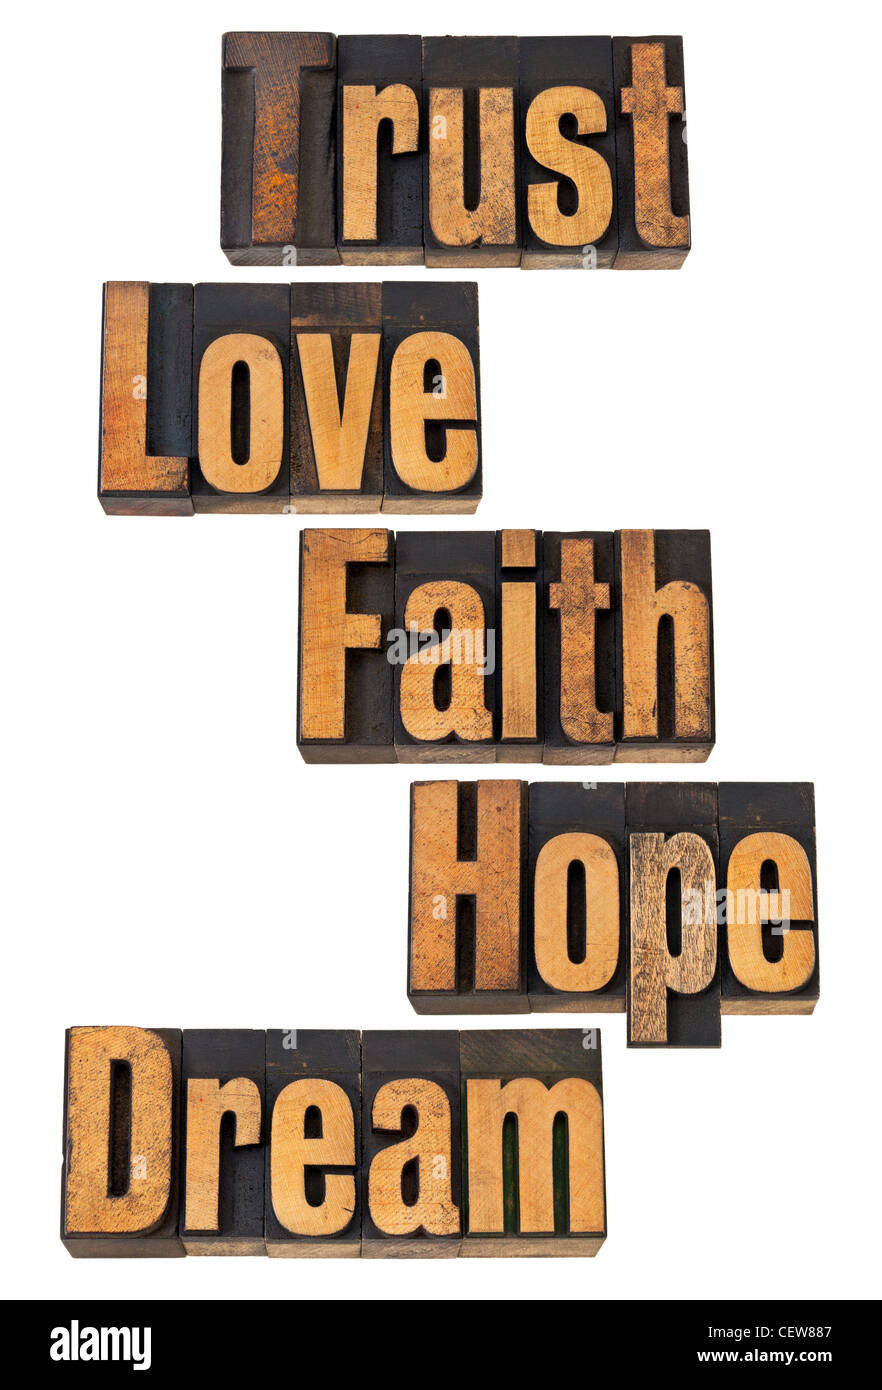 Fiducia, amore, fede, speranza, dream - spirituale e motivazionale parole - vintage rilievografia tipo legno Foto Stock